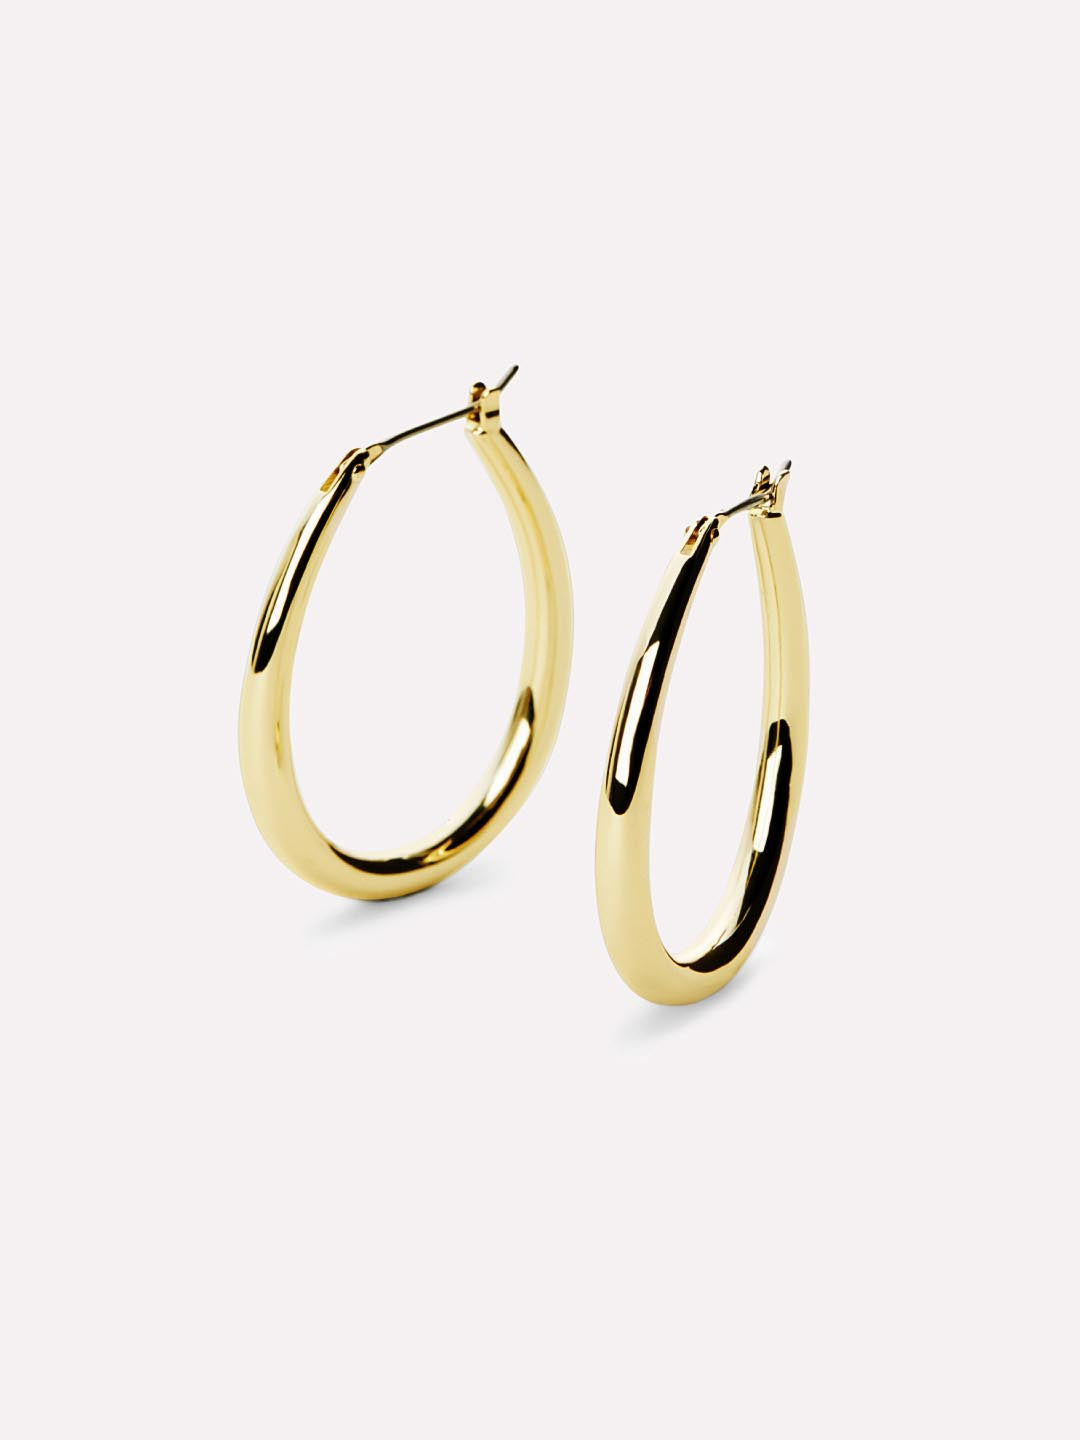 Gold Hoop Earrings - Cuidado | Ana Luisa | Online Jewelry Store At ...